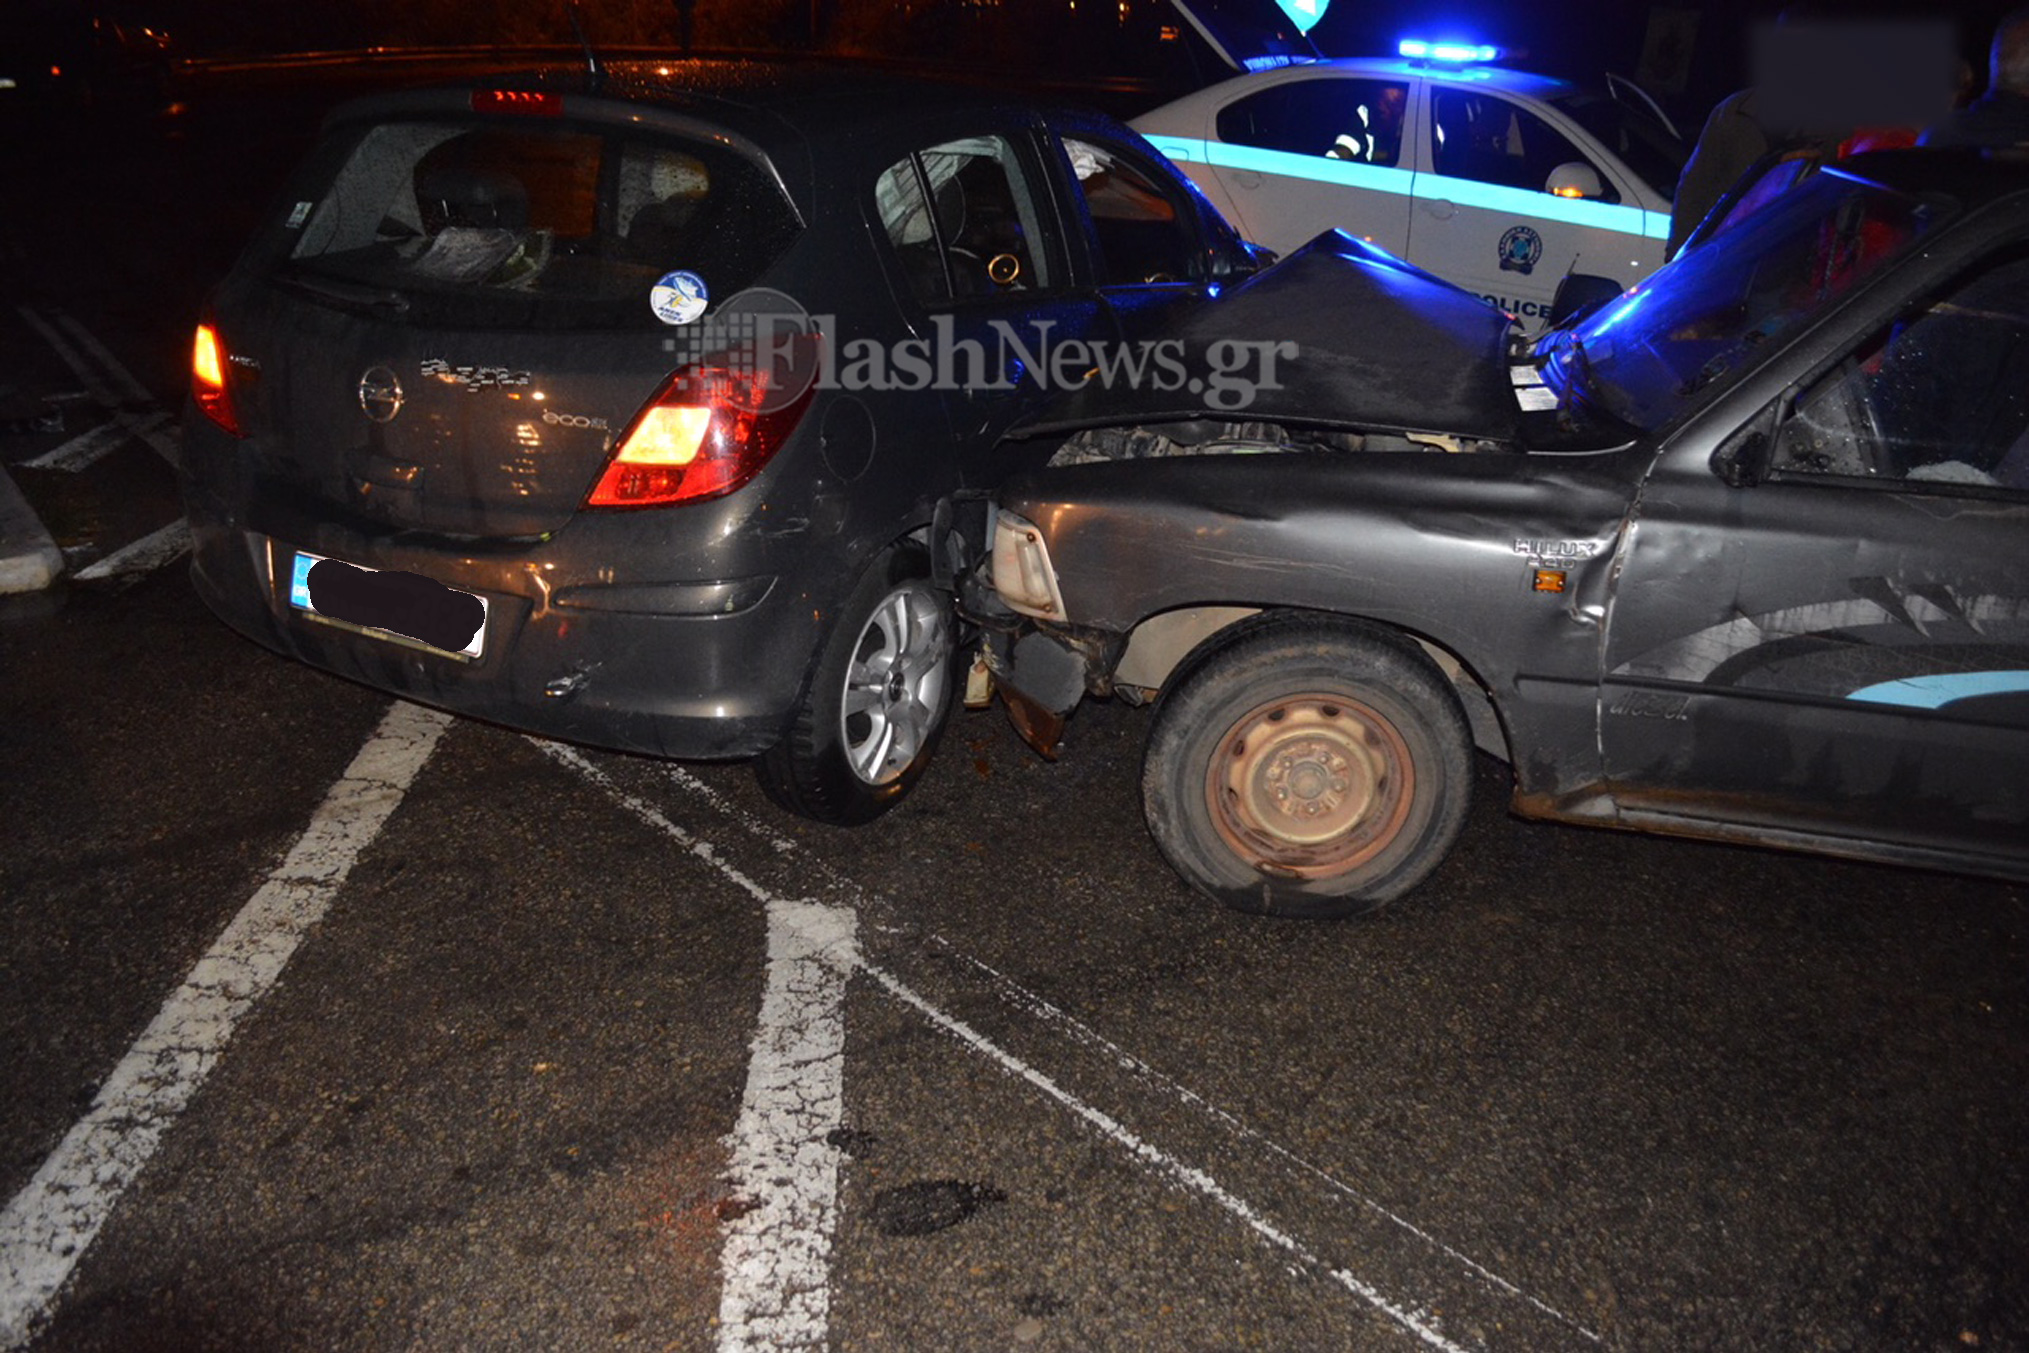 Τροχαίο ατύχημα στην εθνική οδό στο Καλάμι Χανίων